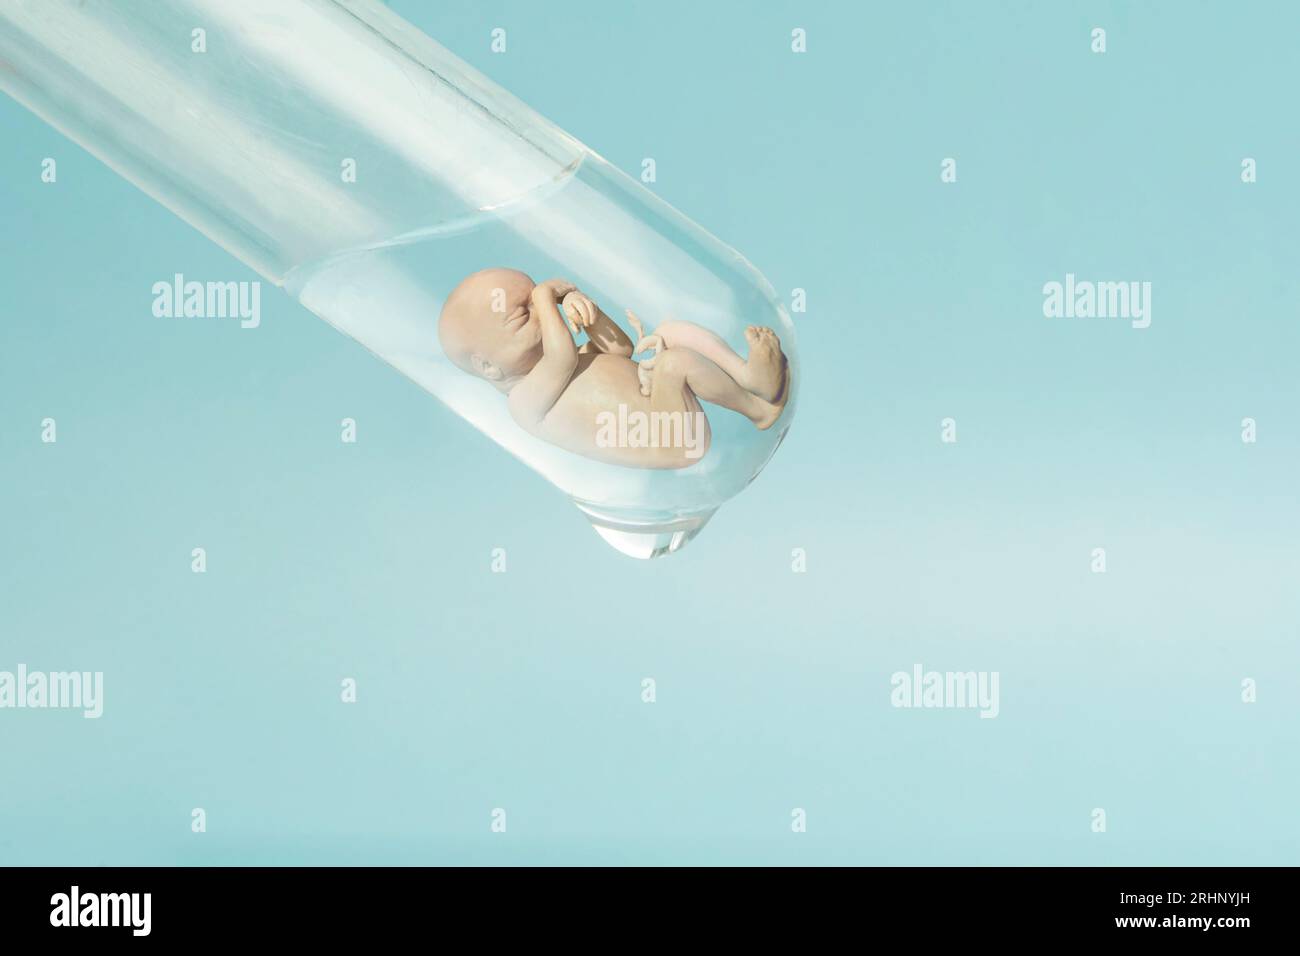 Die künstliche Besamung. Reagenzgläser Baby, IVF. Ein menschlicher Embryo in einem Glasröhrchen auf blauem Laborhintergrund. Der Begriff der künstlichen Insemination o Stockfoto